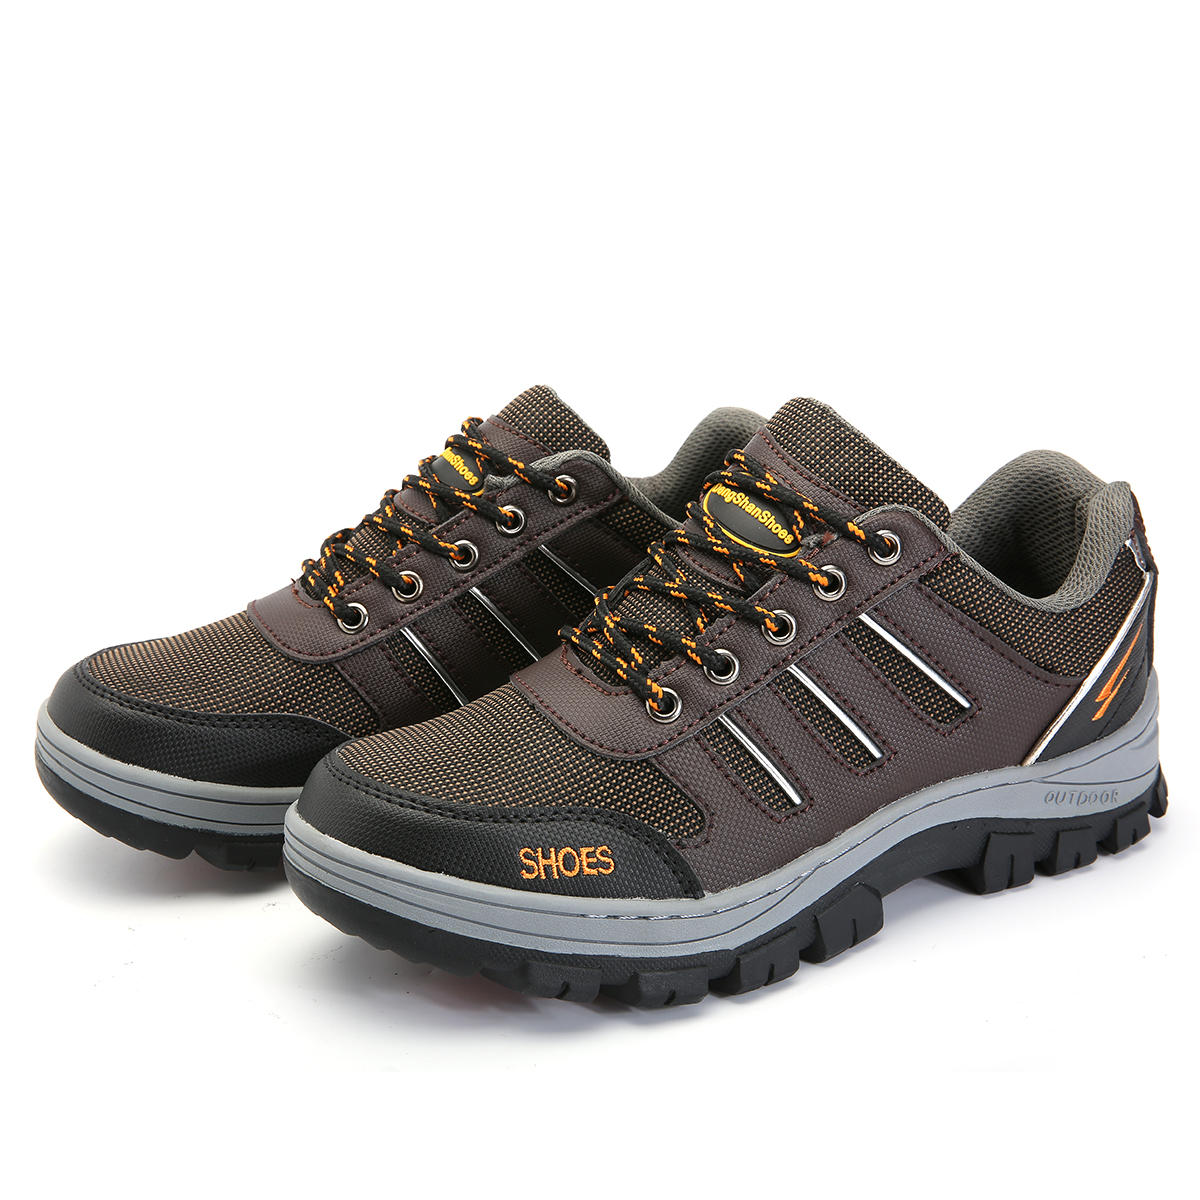 Buty bezpieczeństwa męskie TENGOO ze stali, buty do biegania i wędrówek antypoślizgowe i wodoodporne